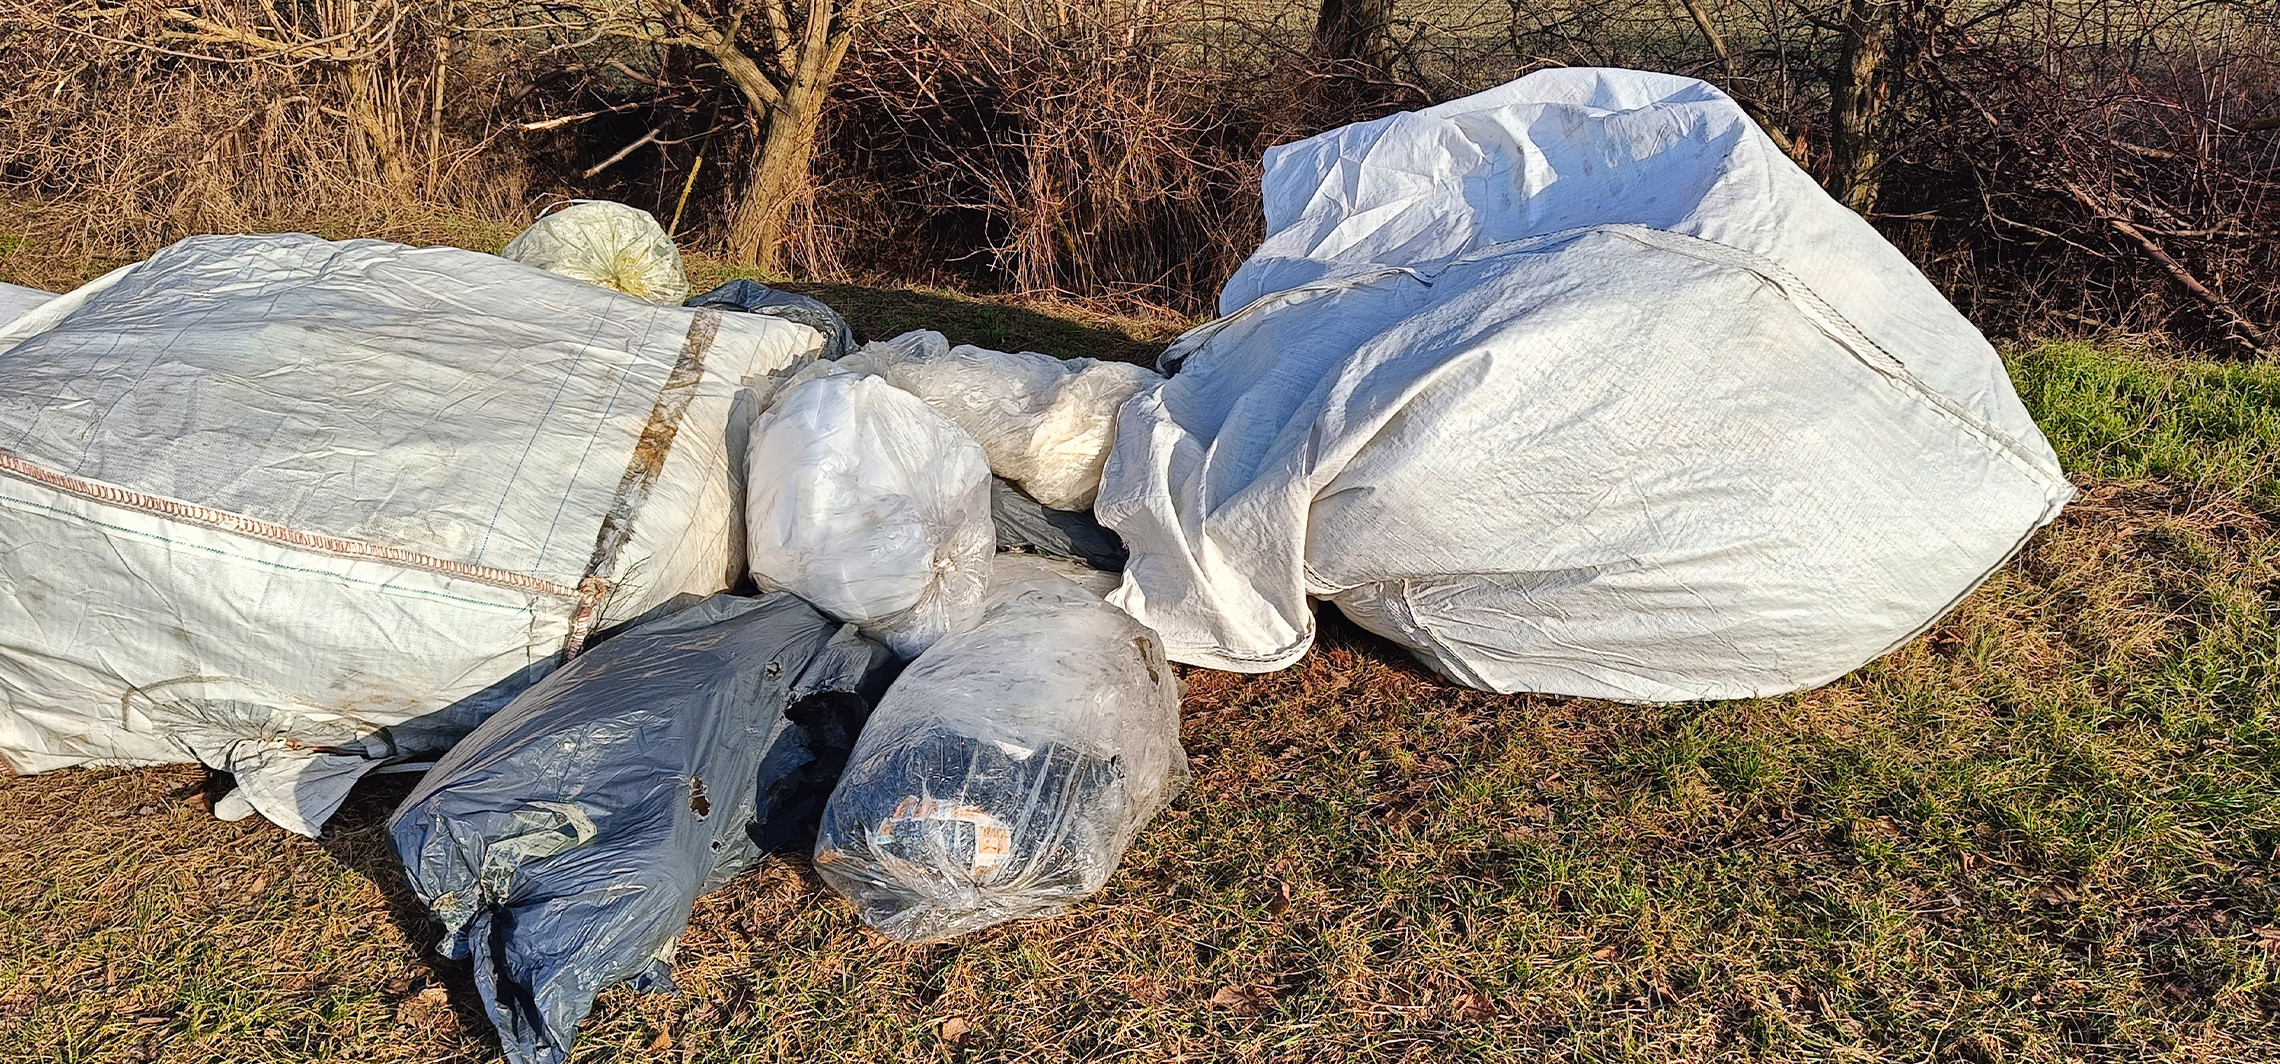 Gmina Inowrocław - Miesiące mijają, a podrzucone odpady wciąż zalegają